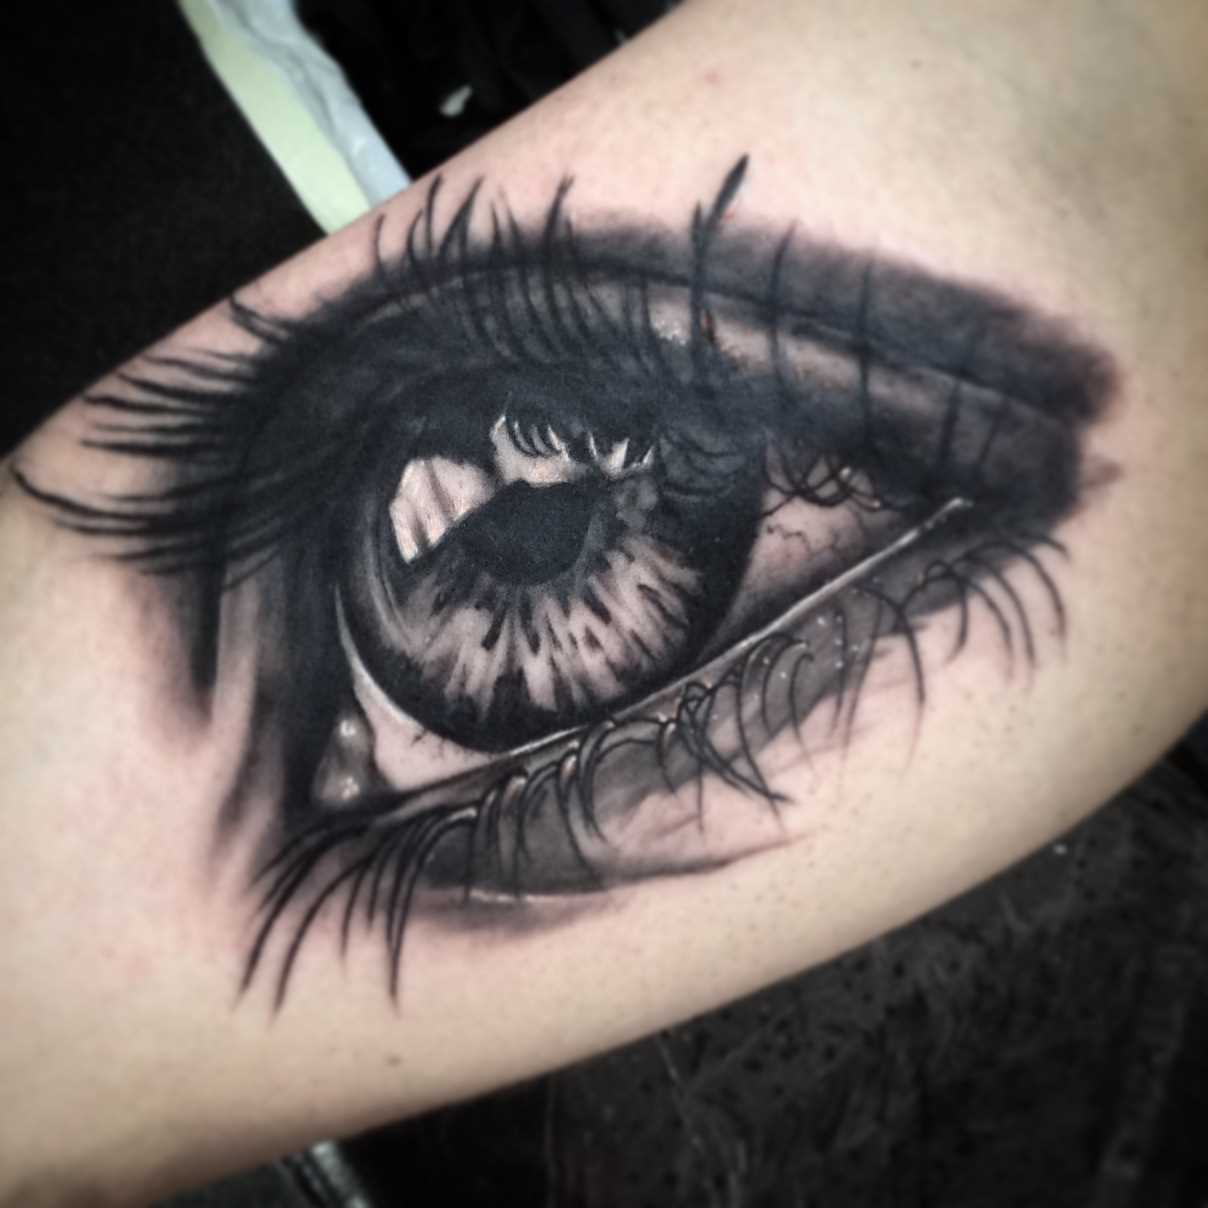 A tatuagem no braço de uma menina de olho